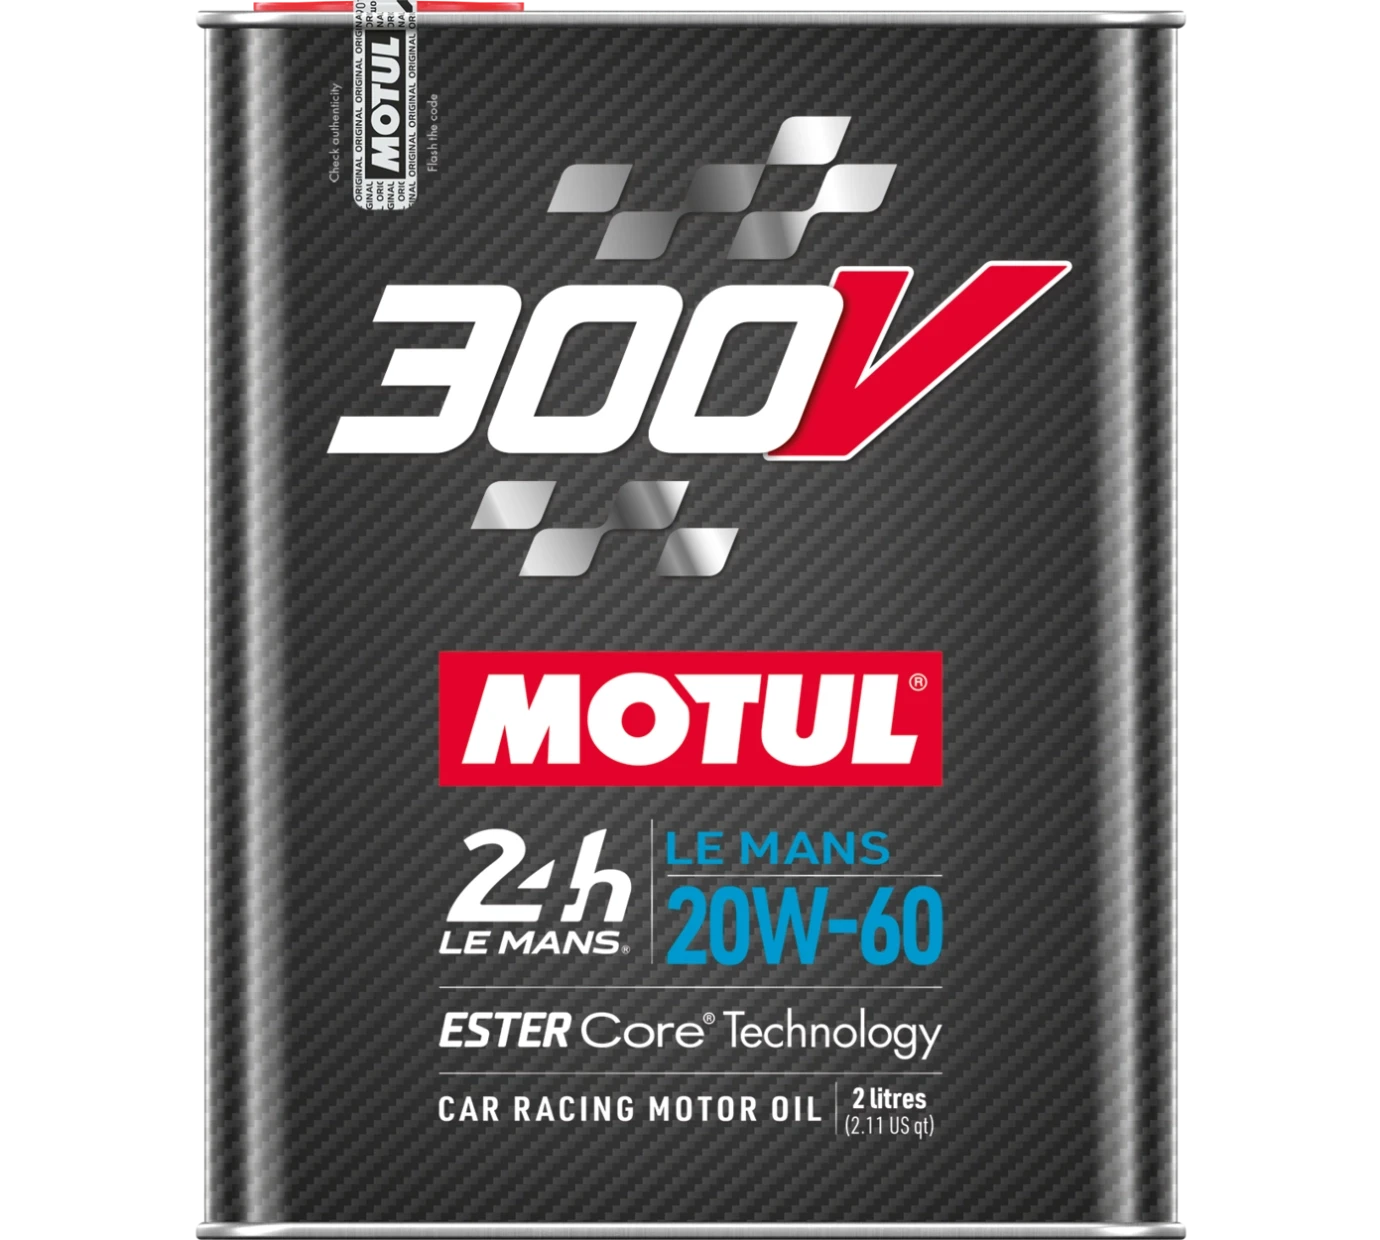 MOTUL 300V LE MANS 20W-60